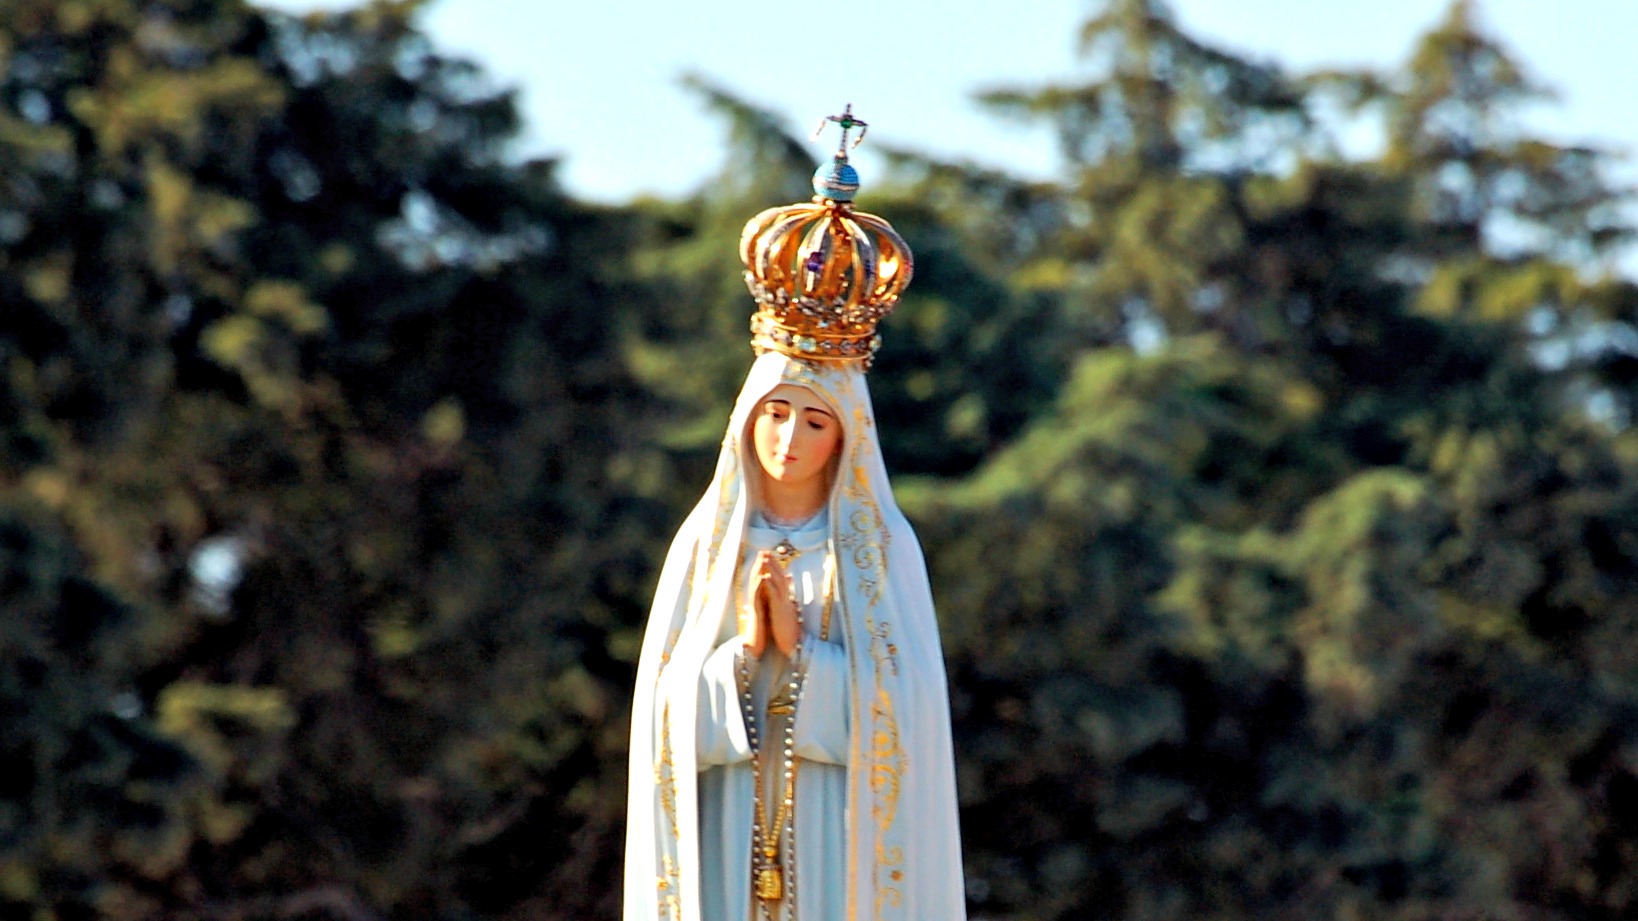 Les représentations de la Vierge de Fatima sont interdites en Chine (Photo:Eduardo Segura/Flickr/CC BY-NC-ND 2.0)